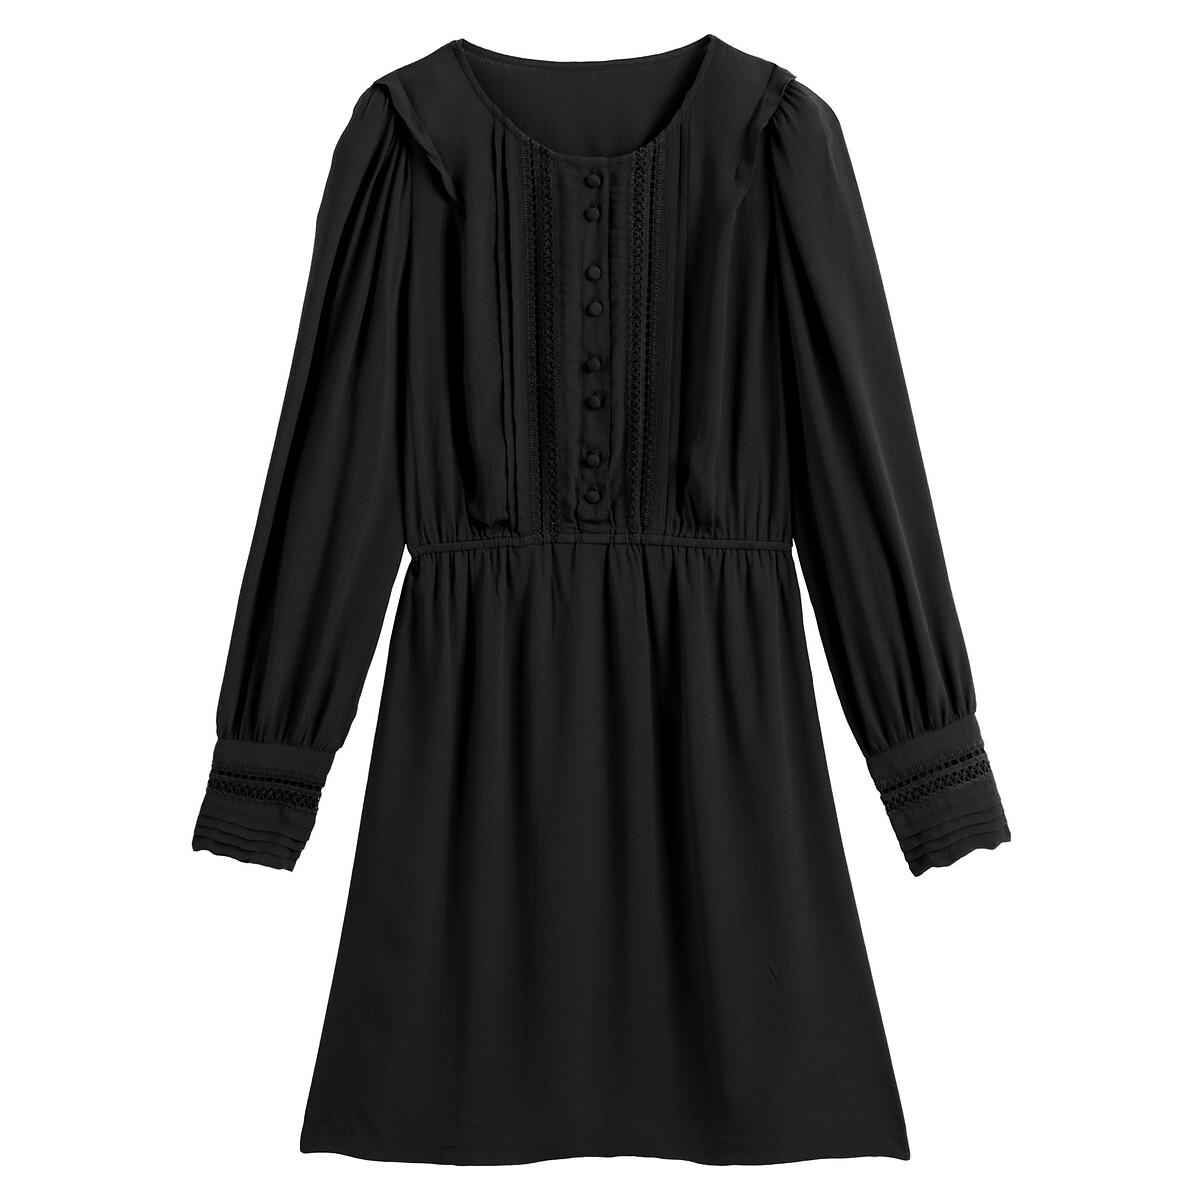 Платье LaRedoute Расклешенное короткое кружевные вставки 48 (FR) - 54 (RUS) черный, размер 48 (FR) - 54 (RUS) Расклешенное короткое кружевные вставки 48 (FR) - 54 (RUS) черный - фото 5